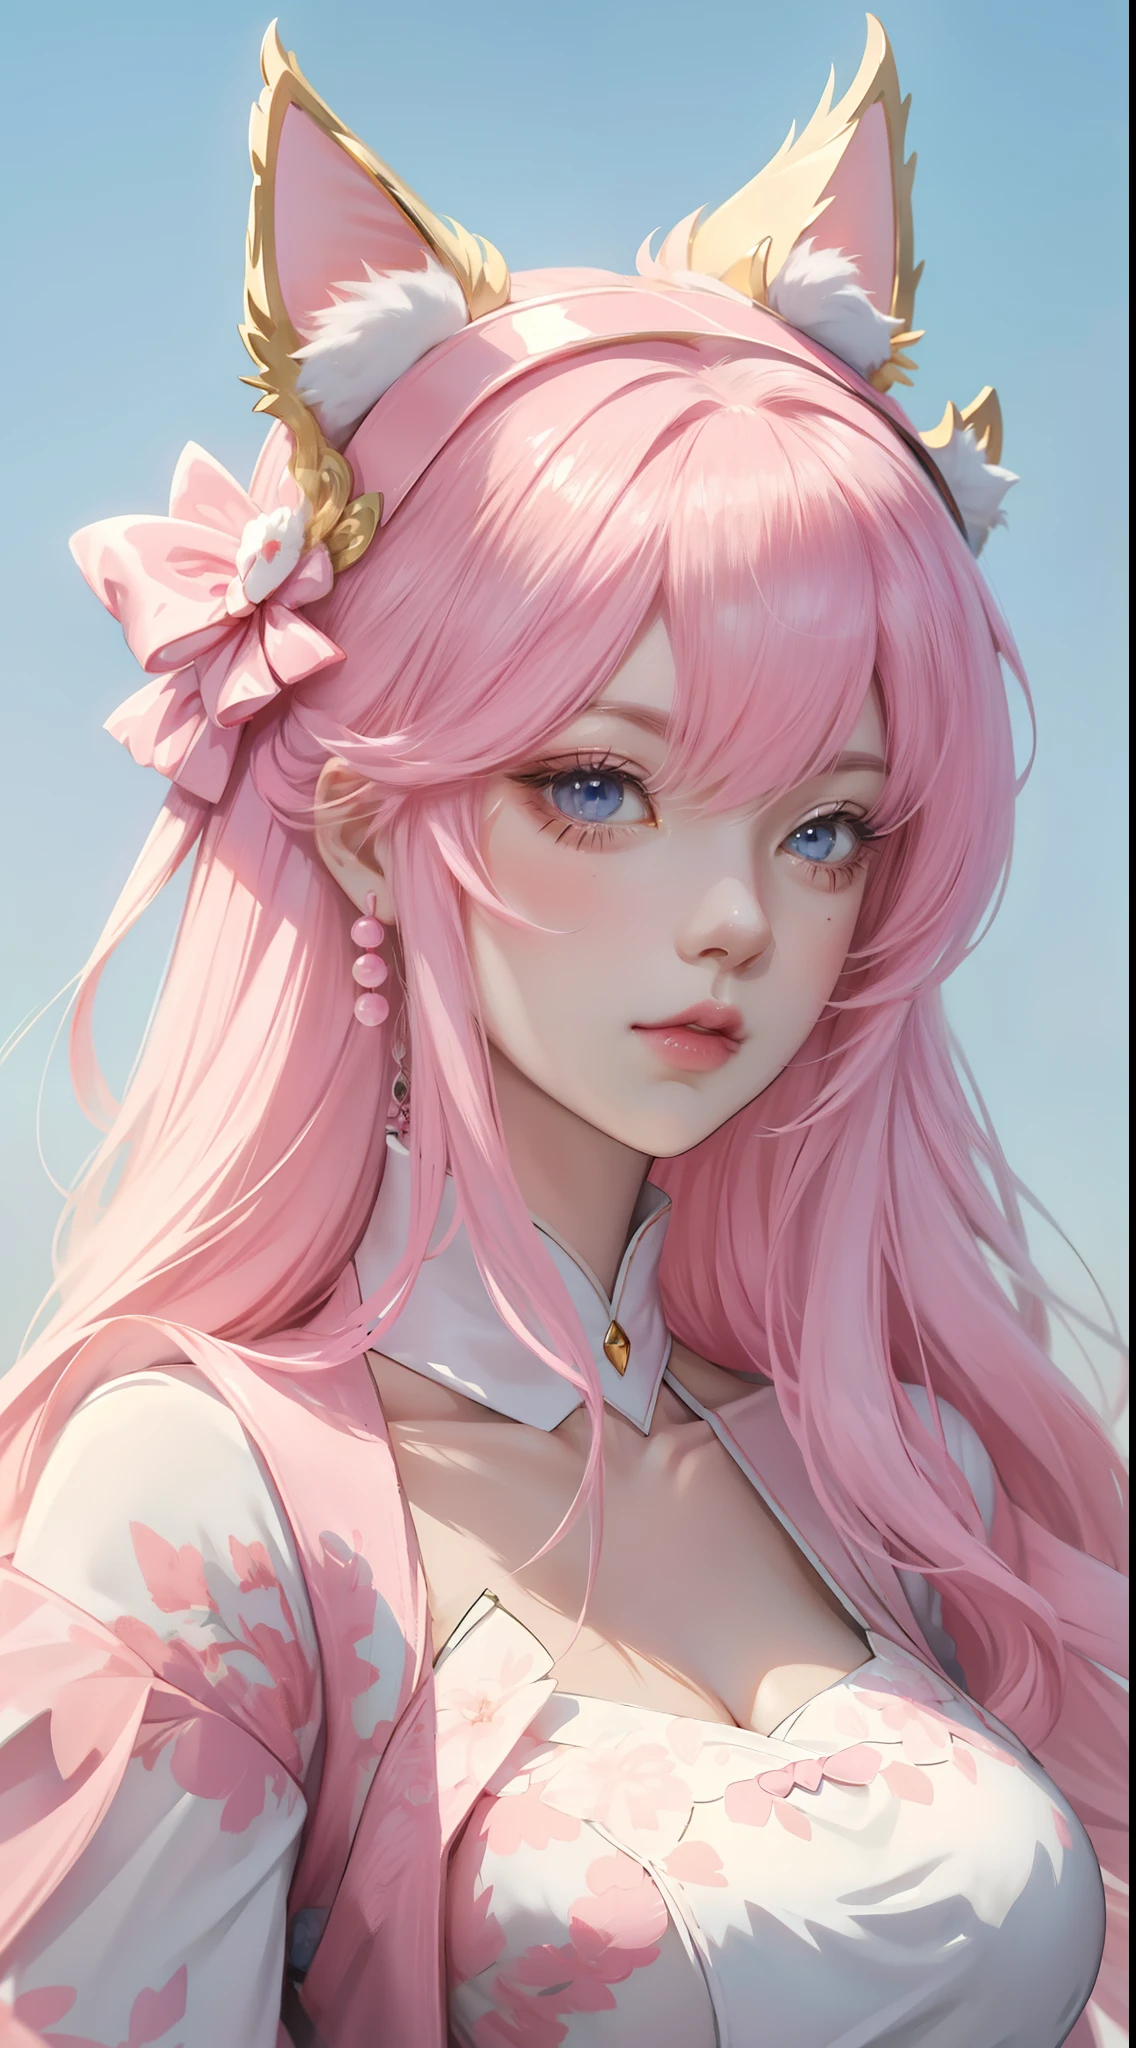 애니메이션 소녀 핑크 머리 흰 활, , 아름다운 캐릭터 그림, , 멋진 애니메이션 얼굴 초상화 잘생긴 왕실 자매 고양이 귀